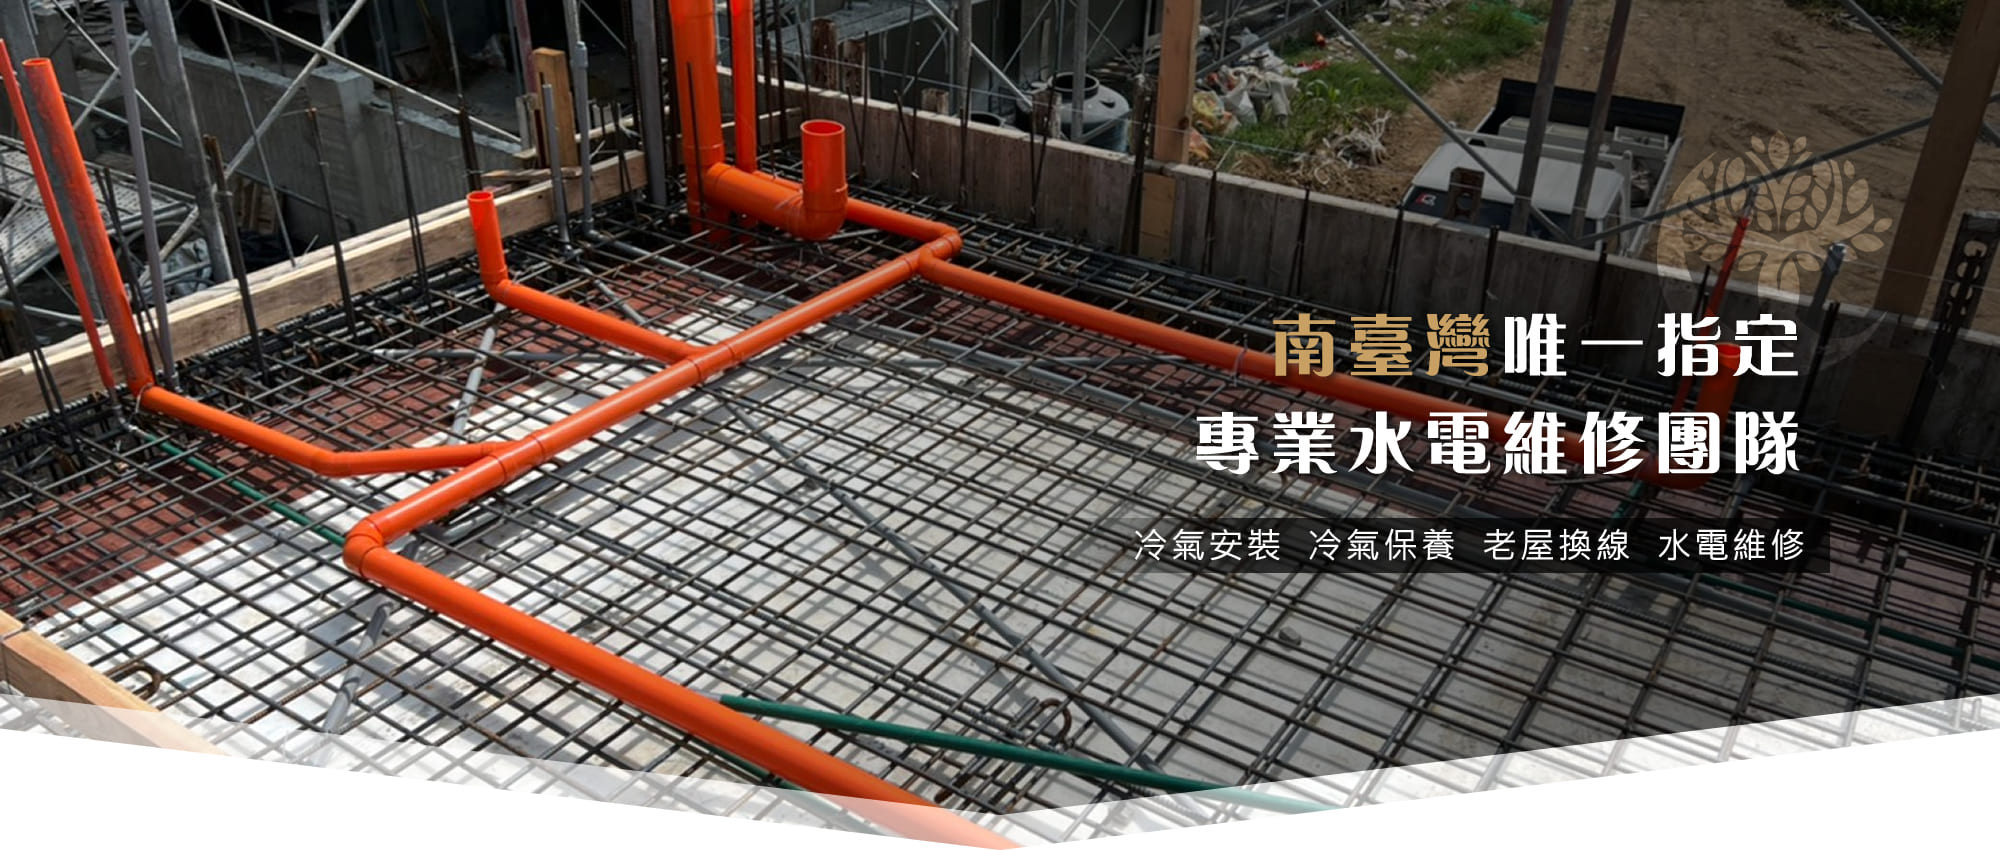 【高雄水電工程】德鑫旺水電空調工程0925-209772